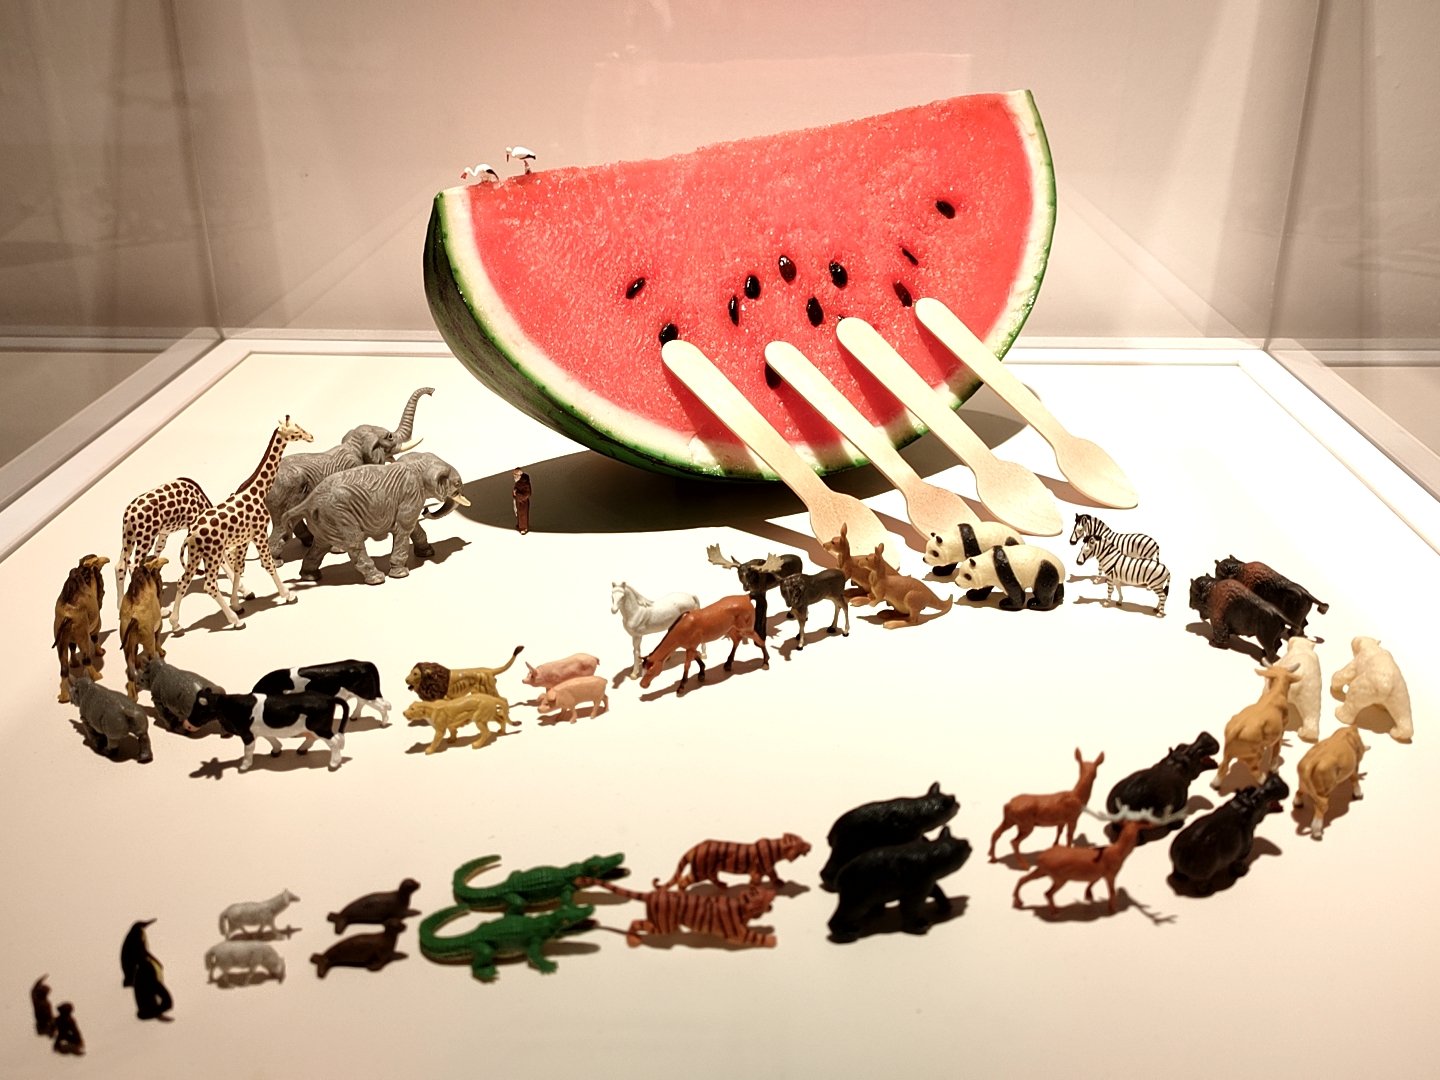 氷見市芸術文化館に田中達也さんのミニチュア作品を見に言ったら素敵すぎて興奮した話。